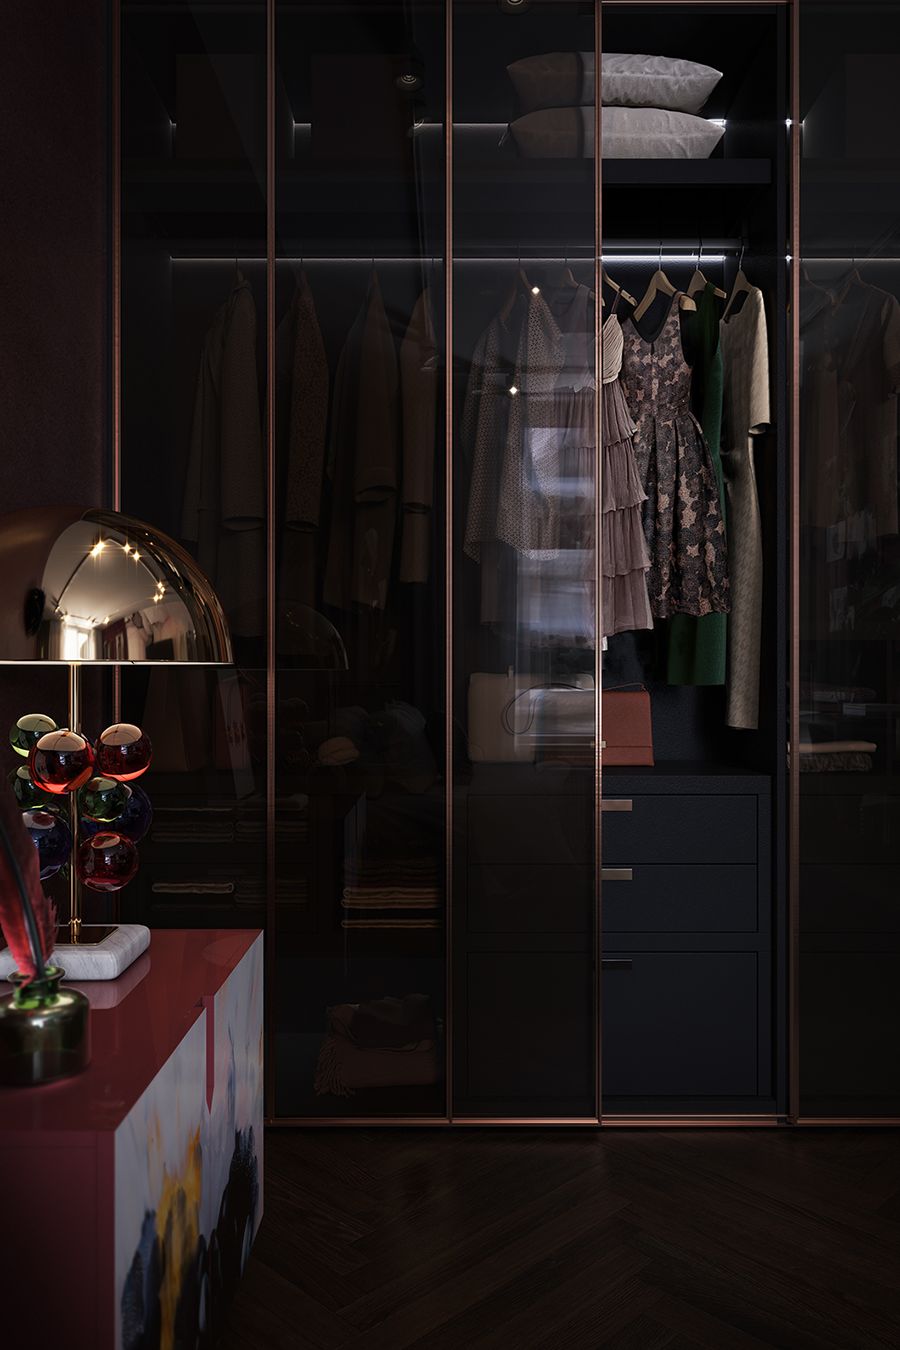 衣帽间采用当下流行的金属玻璃柜门,内置灯照明,为空间增添了一丝精致